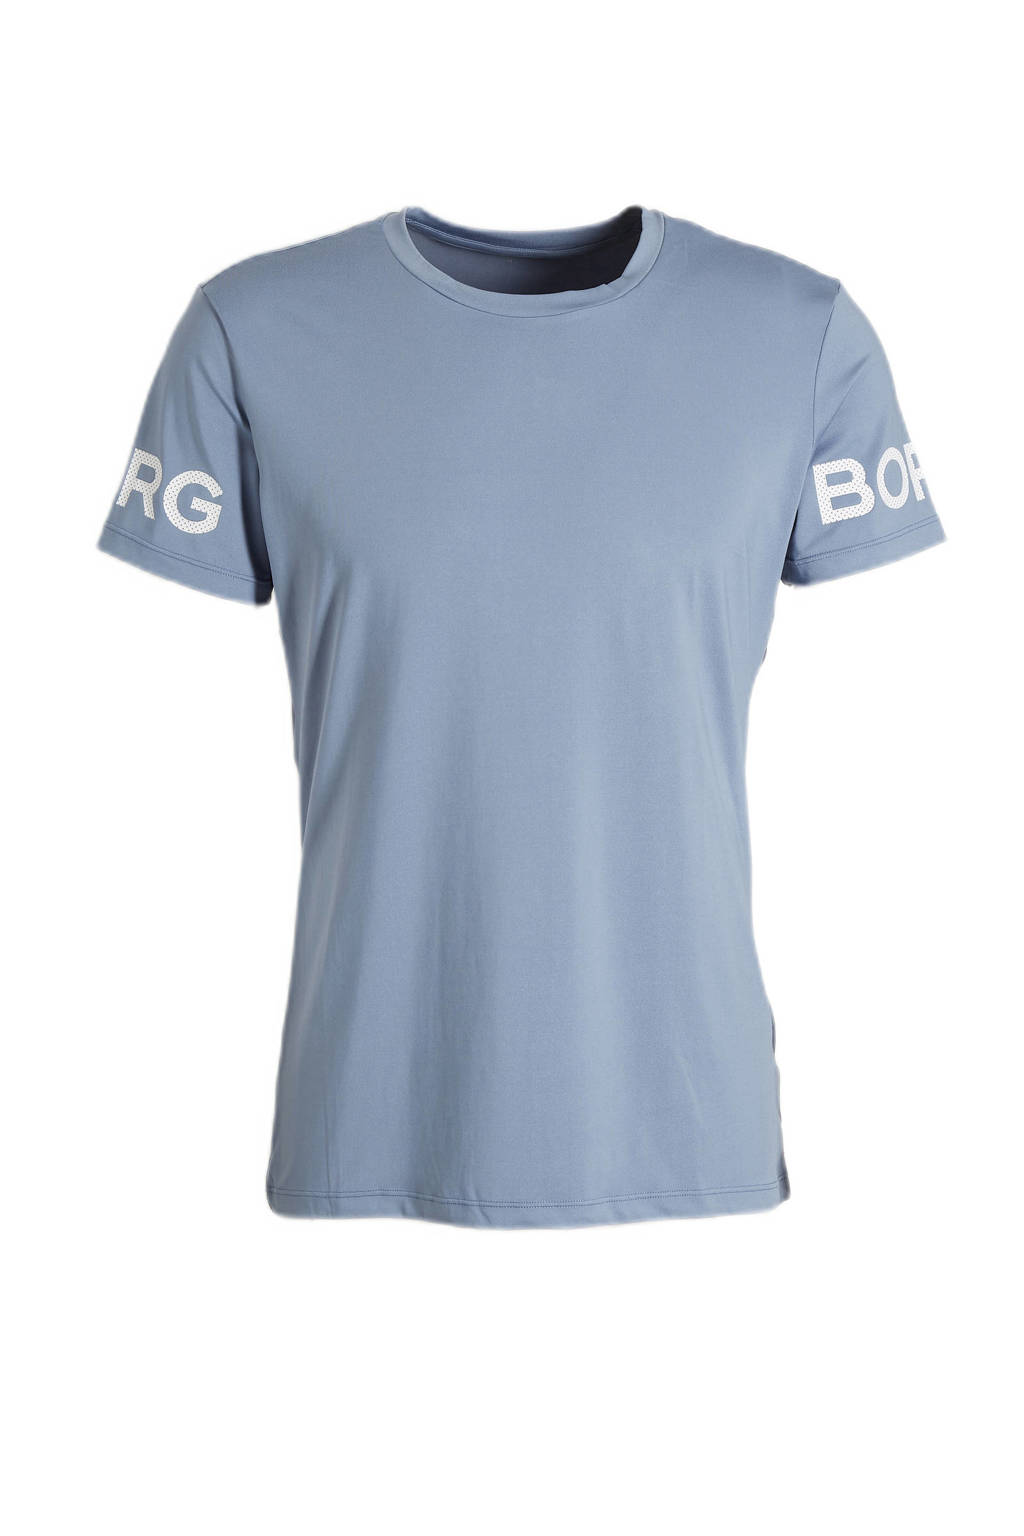 Lichtblauwe heren Björn Borg sport T-shirt van gerecycled polyester met camouflageprint, korte mouwen en ronde hals